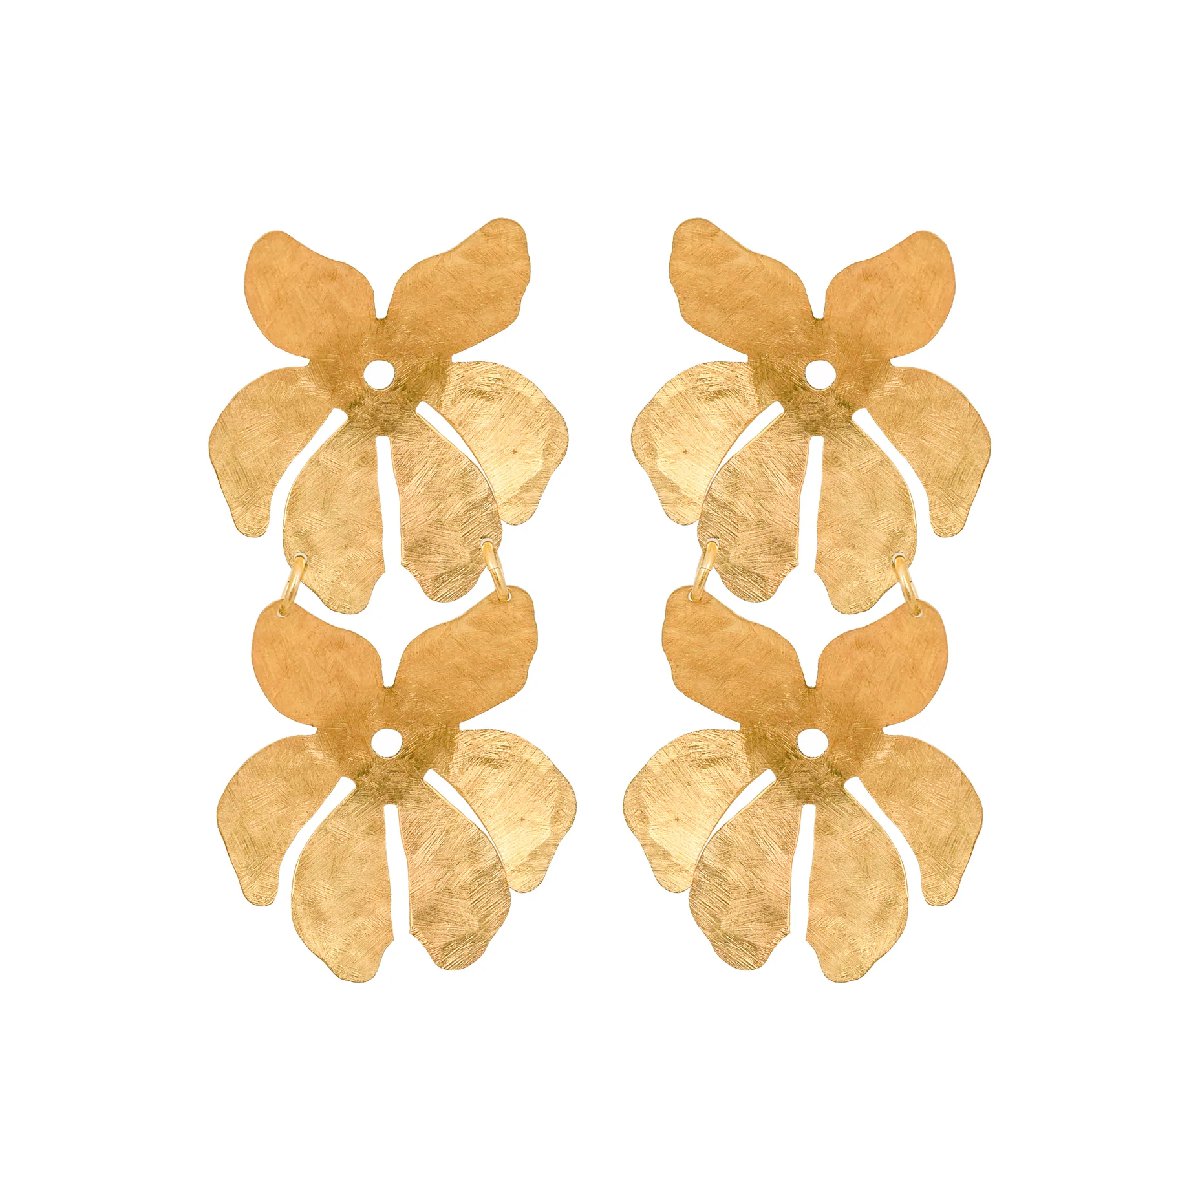 mondocherry - We Dream in Colour jewellery | little tahiti earrings